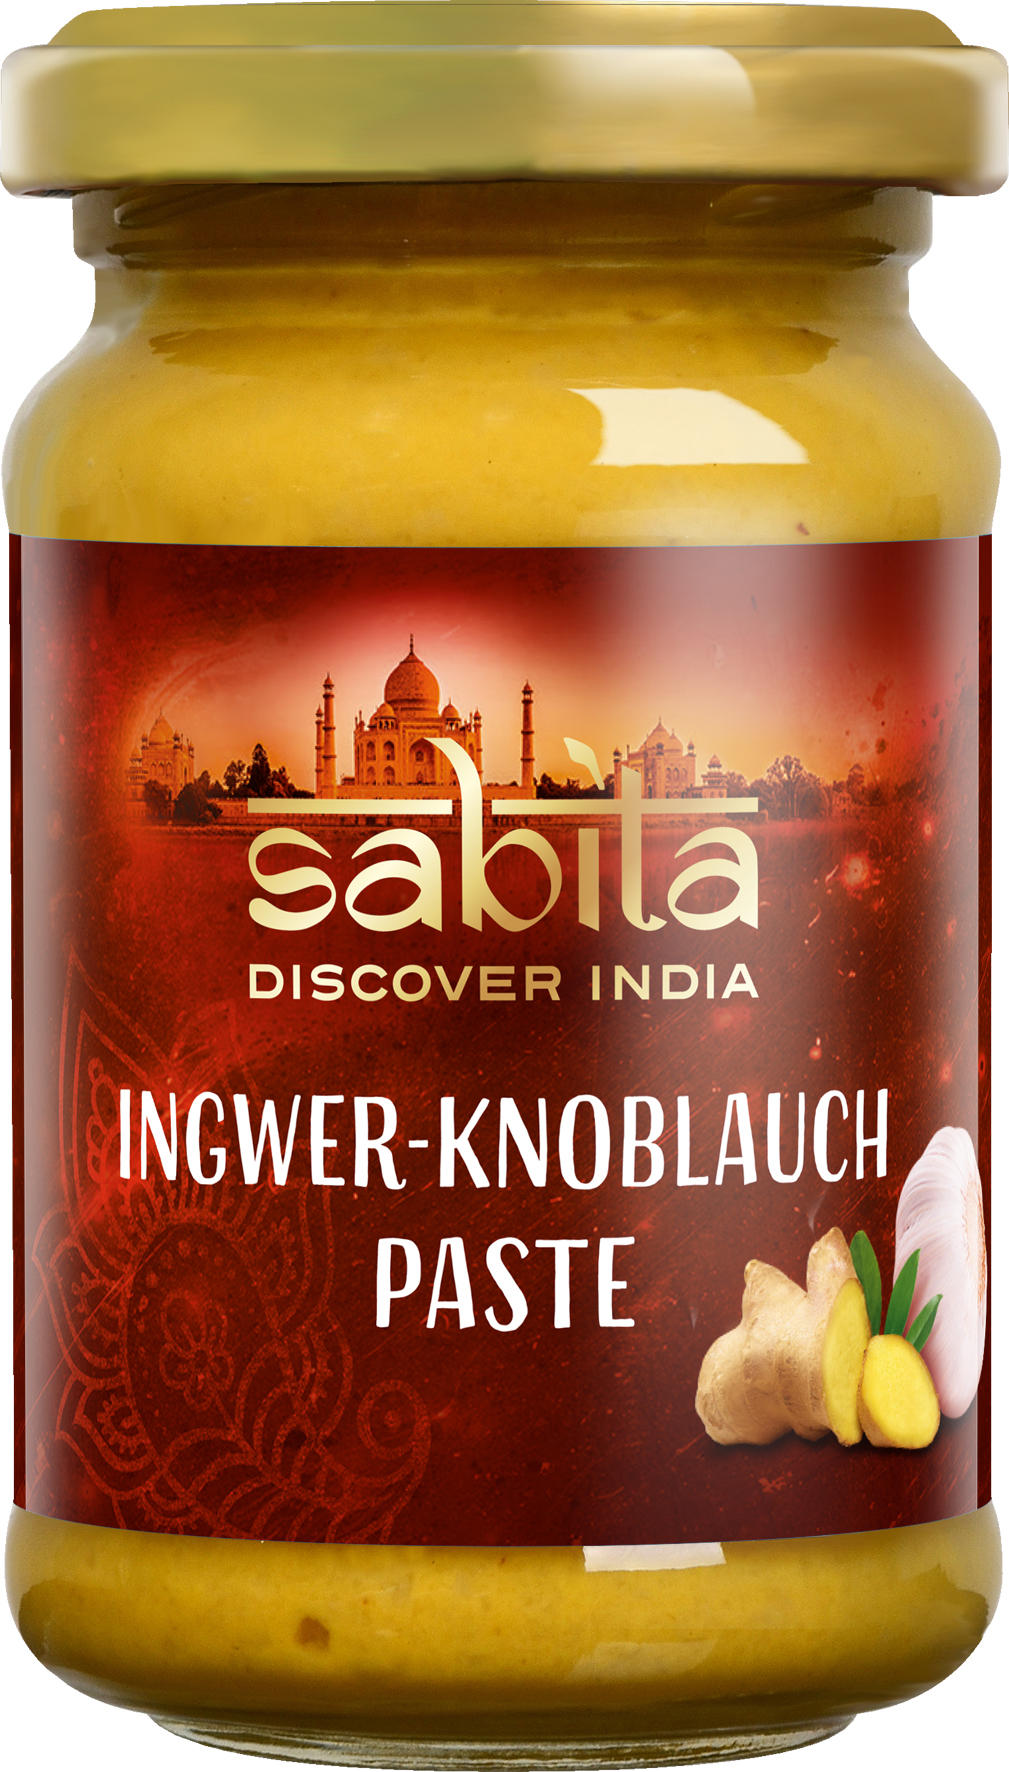 Ingwer-Knoblauch-Paste von Sabita, 150g | FEINES.DE Shop Feinkost kaufen